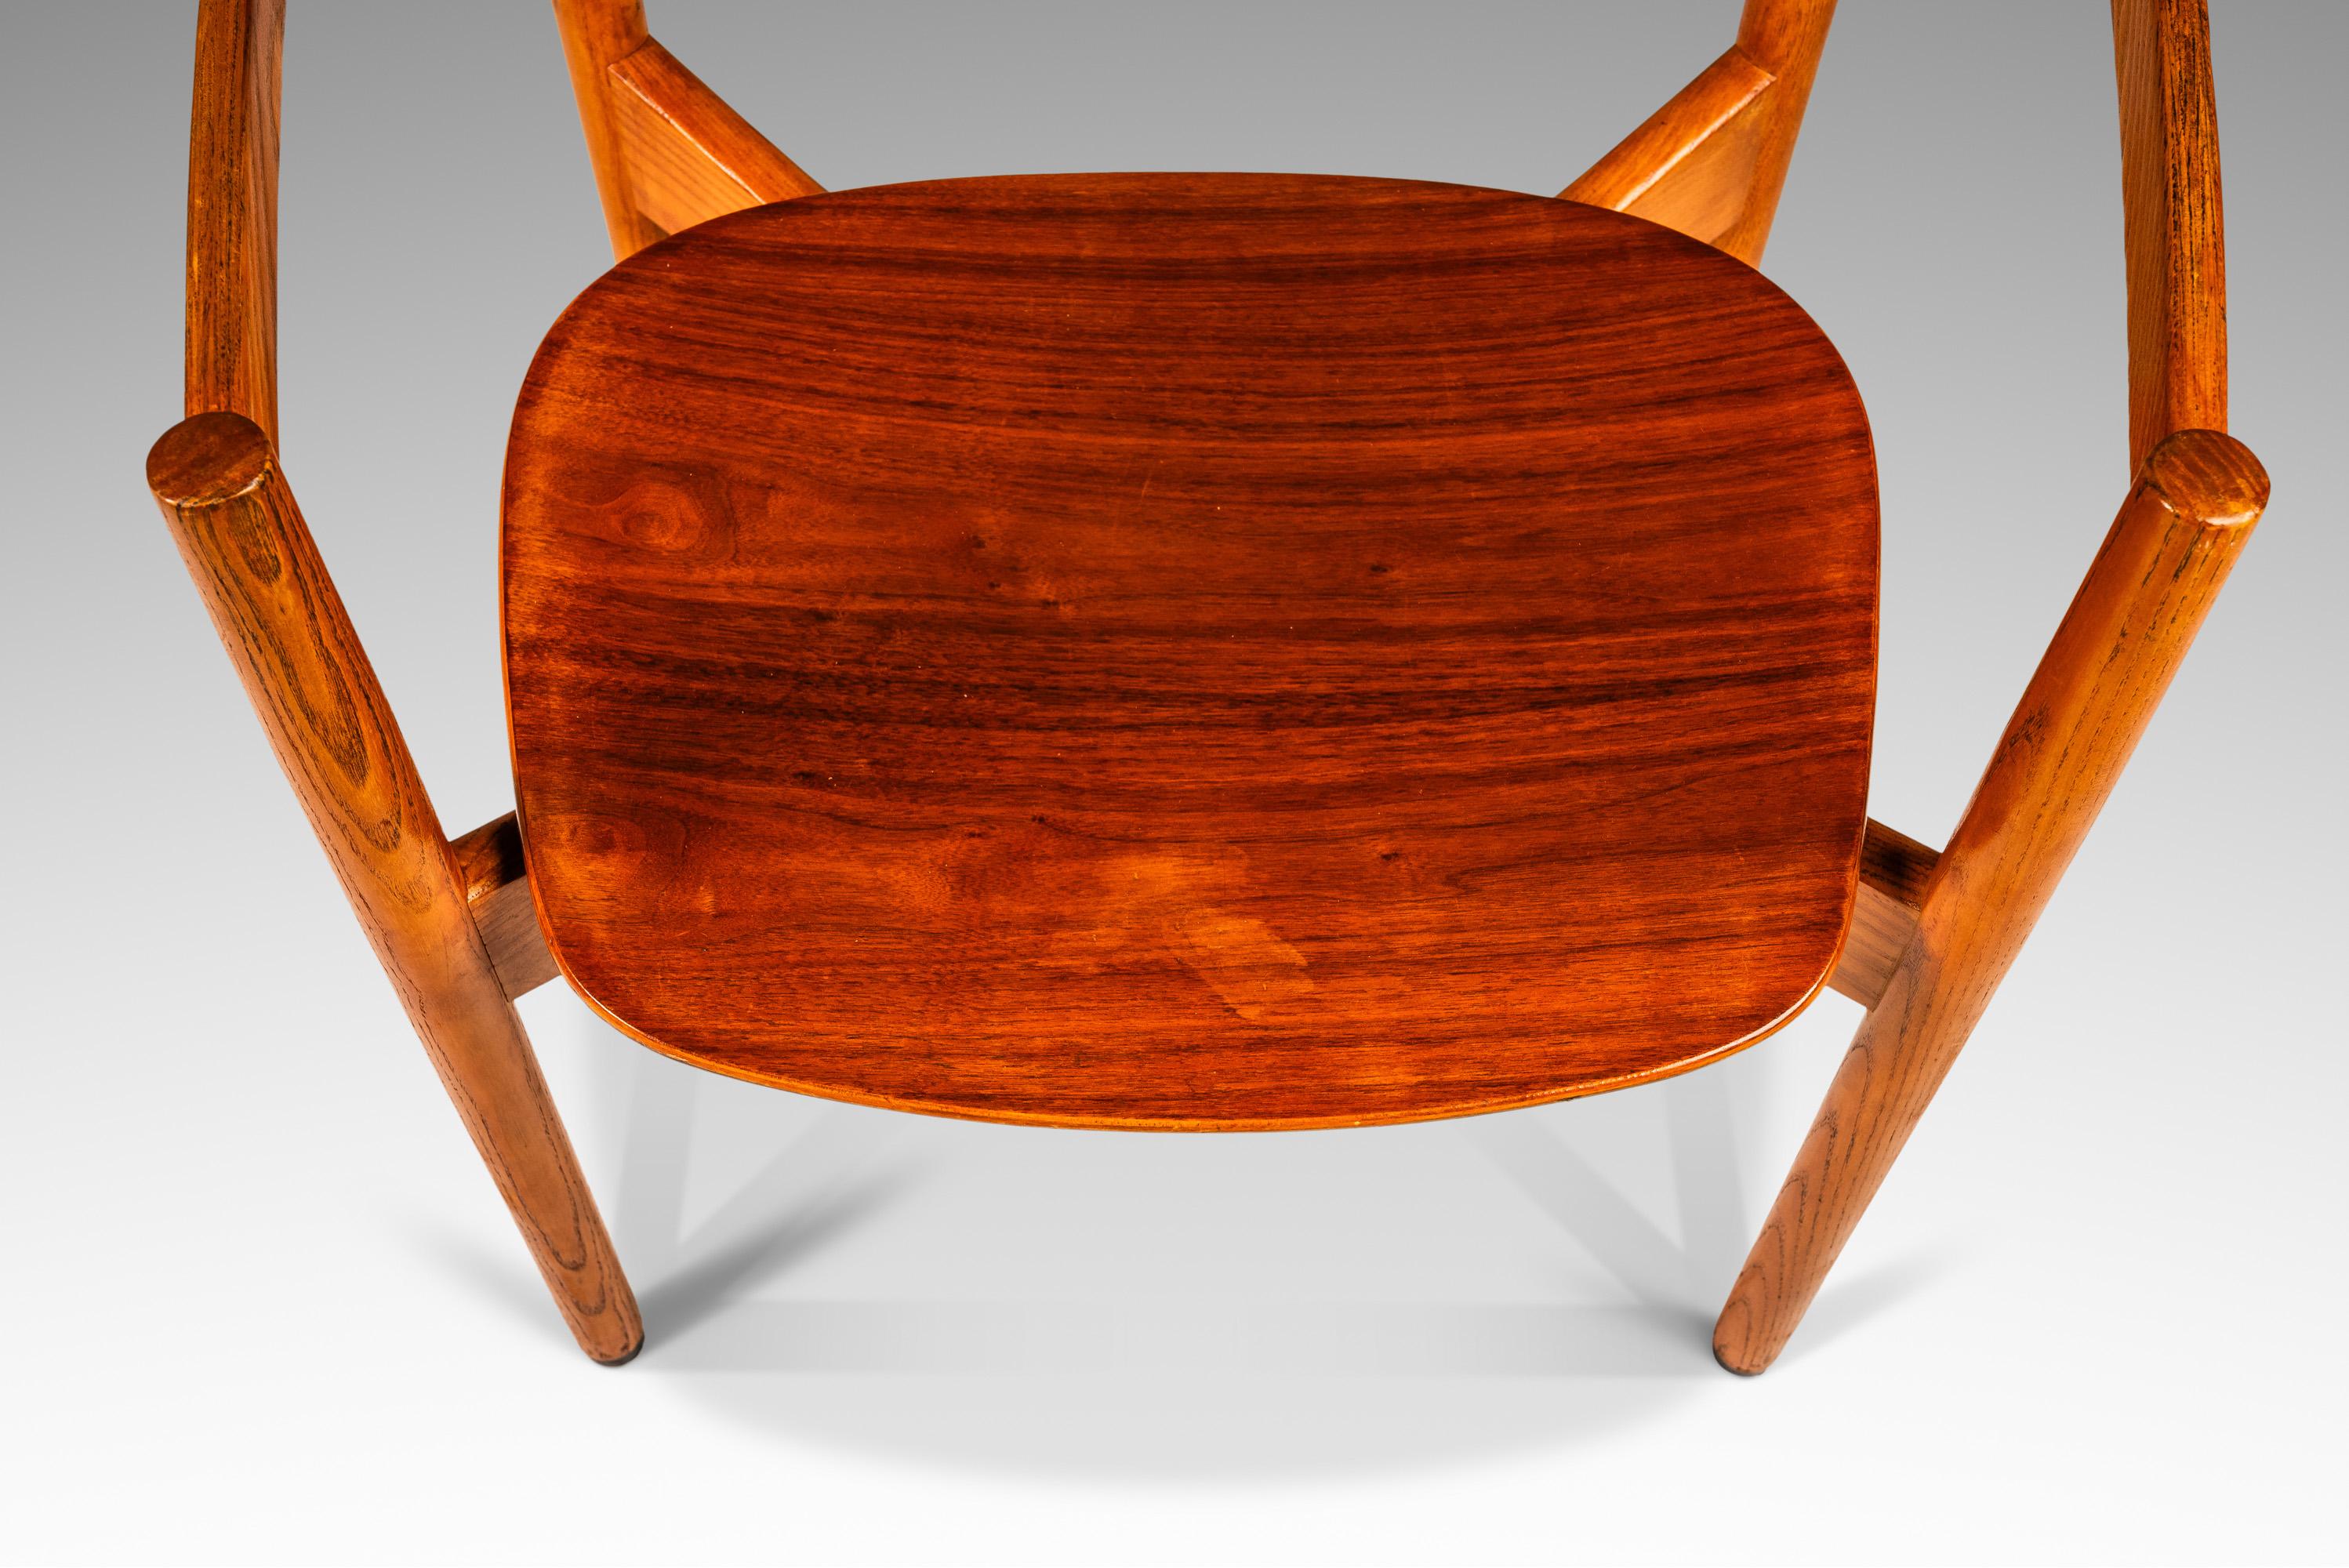 Single Mid-Century Modern Chair in Oak & Walnut  by Jens Risom, USA, c. 1960s For Sale 7